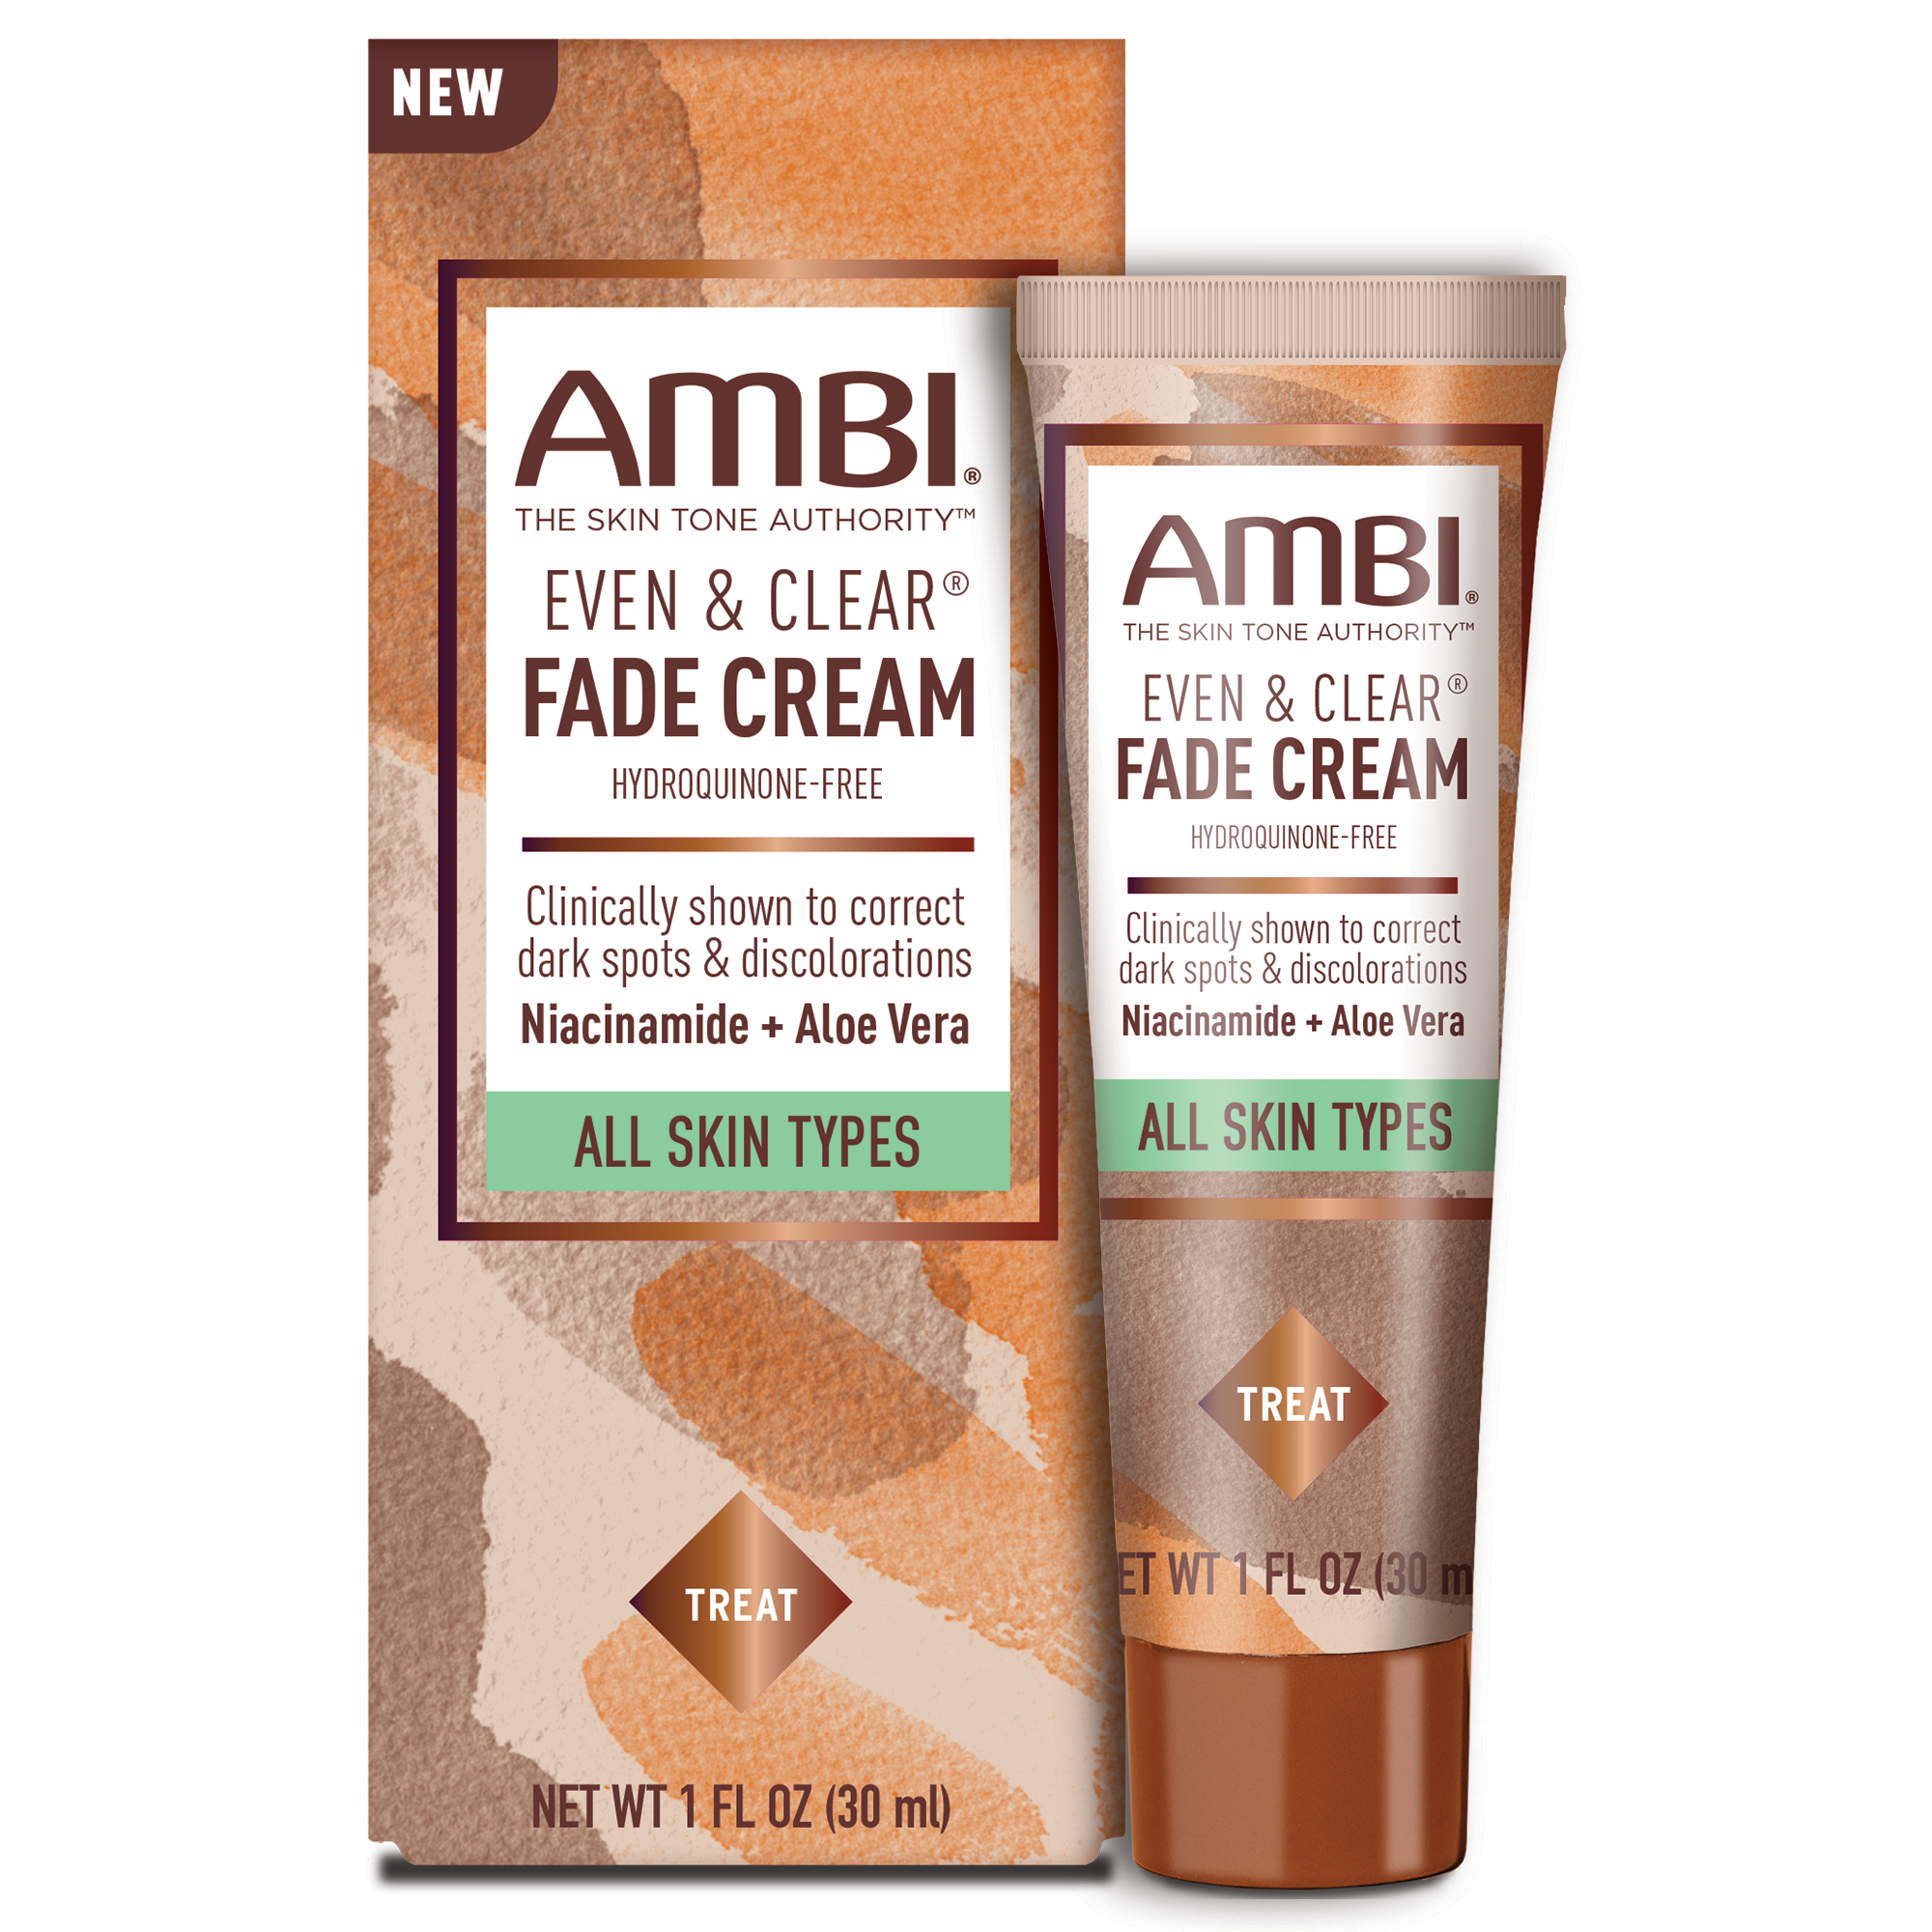 NEW! AMBI Fade Cream Hydroquinone-Free